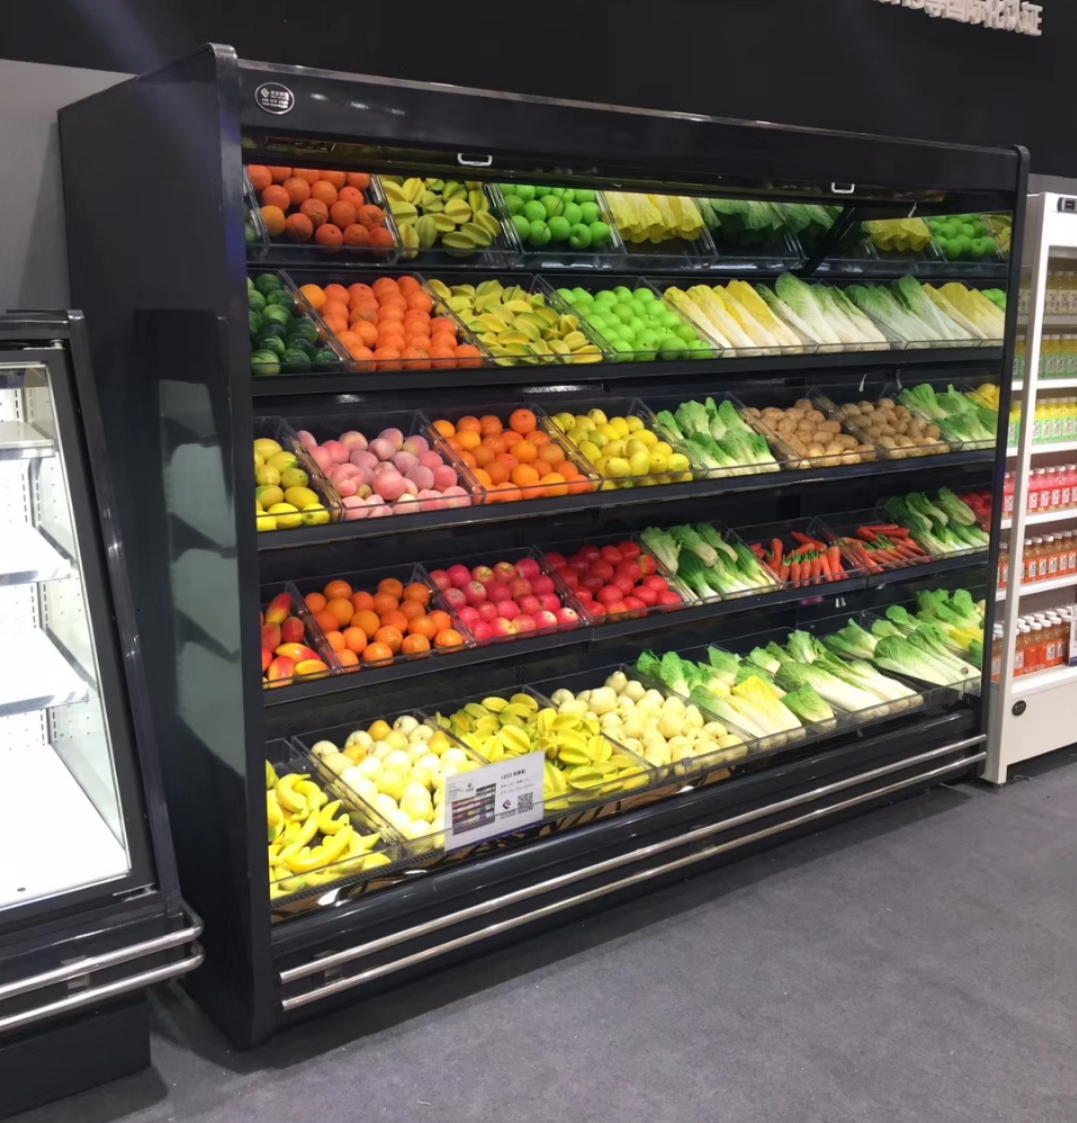 蔬菜冷藏柜 未来雪-W-FMG-12-水果保鲜柜 超市风幕柜 水果店风幕柜 商用冰箱展示柜冰柜 水果柜3